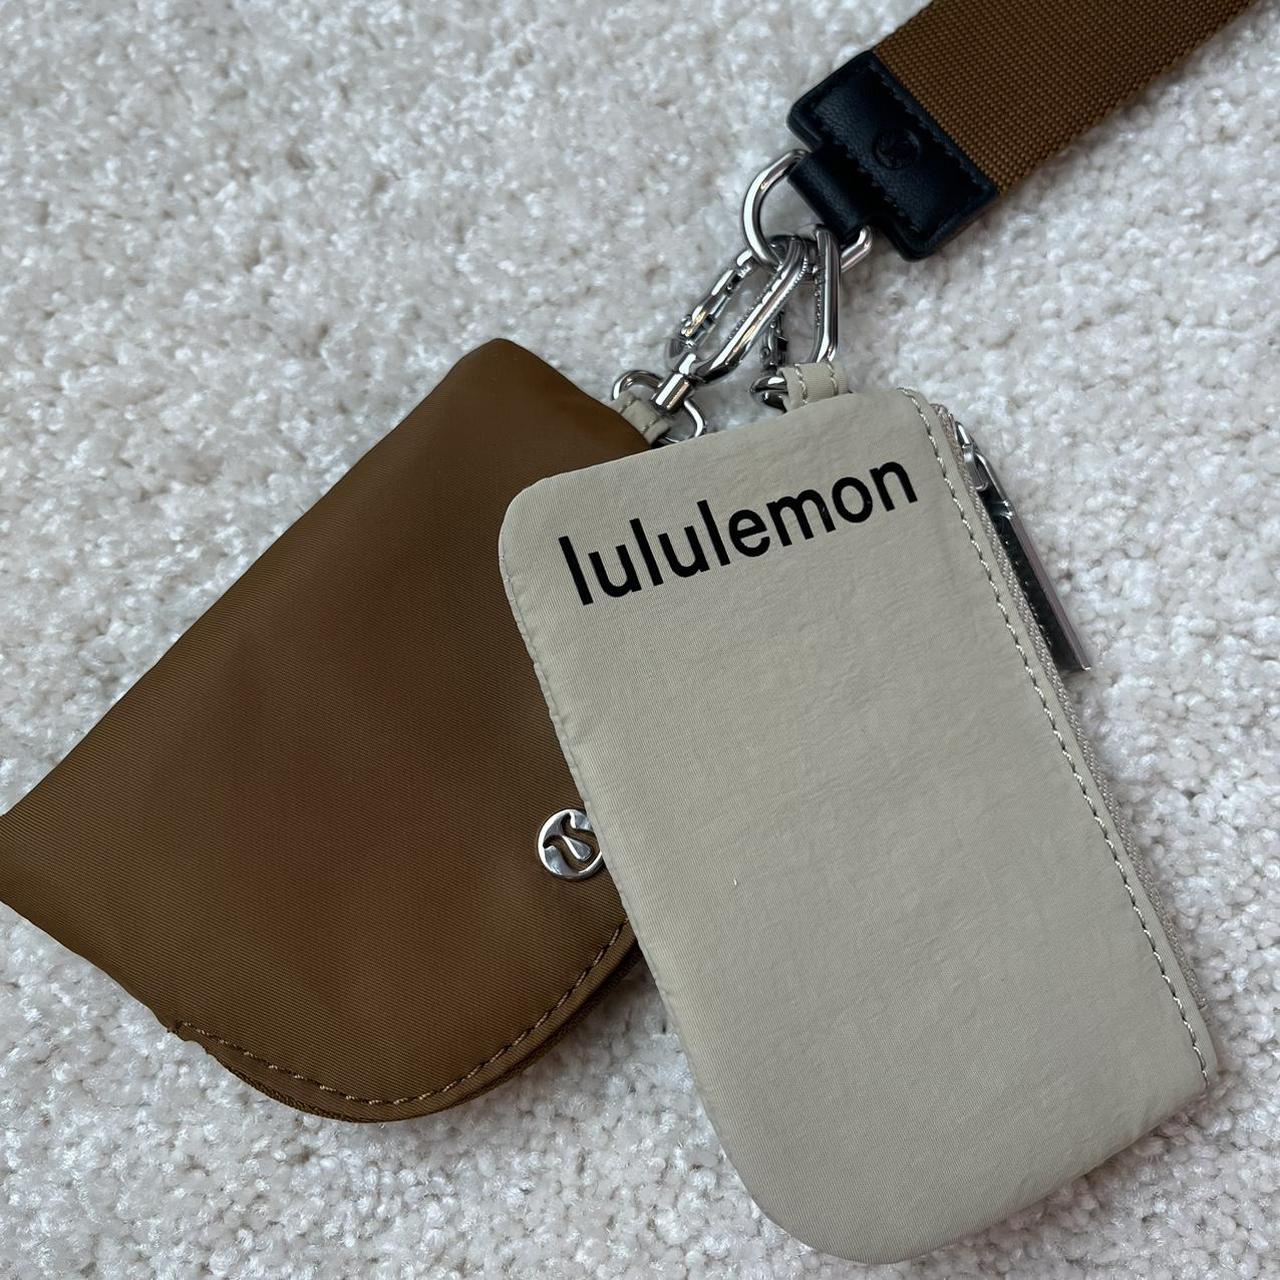 Lululemon Dual Pouch Wristlet - Gold/Neutral